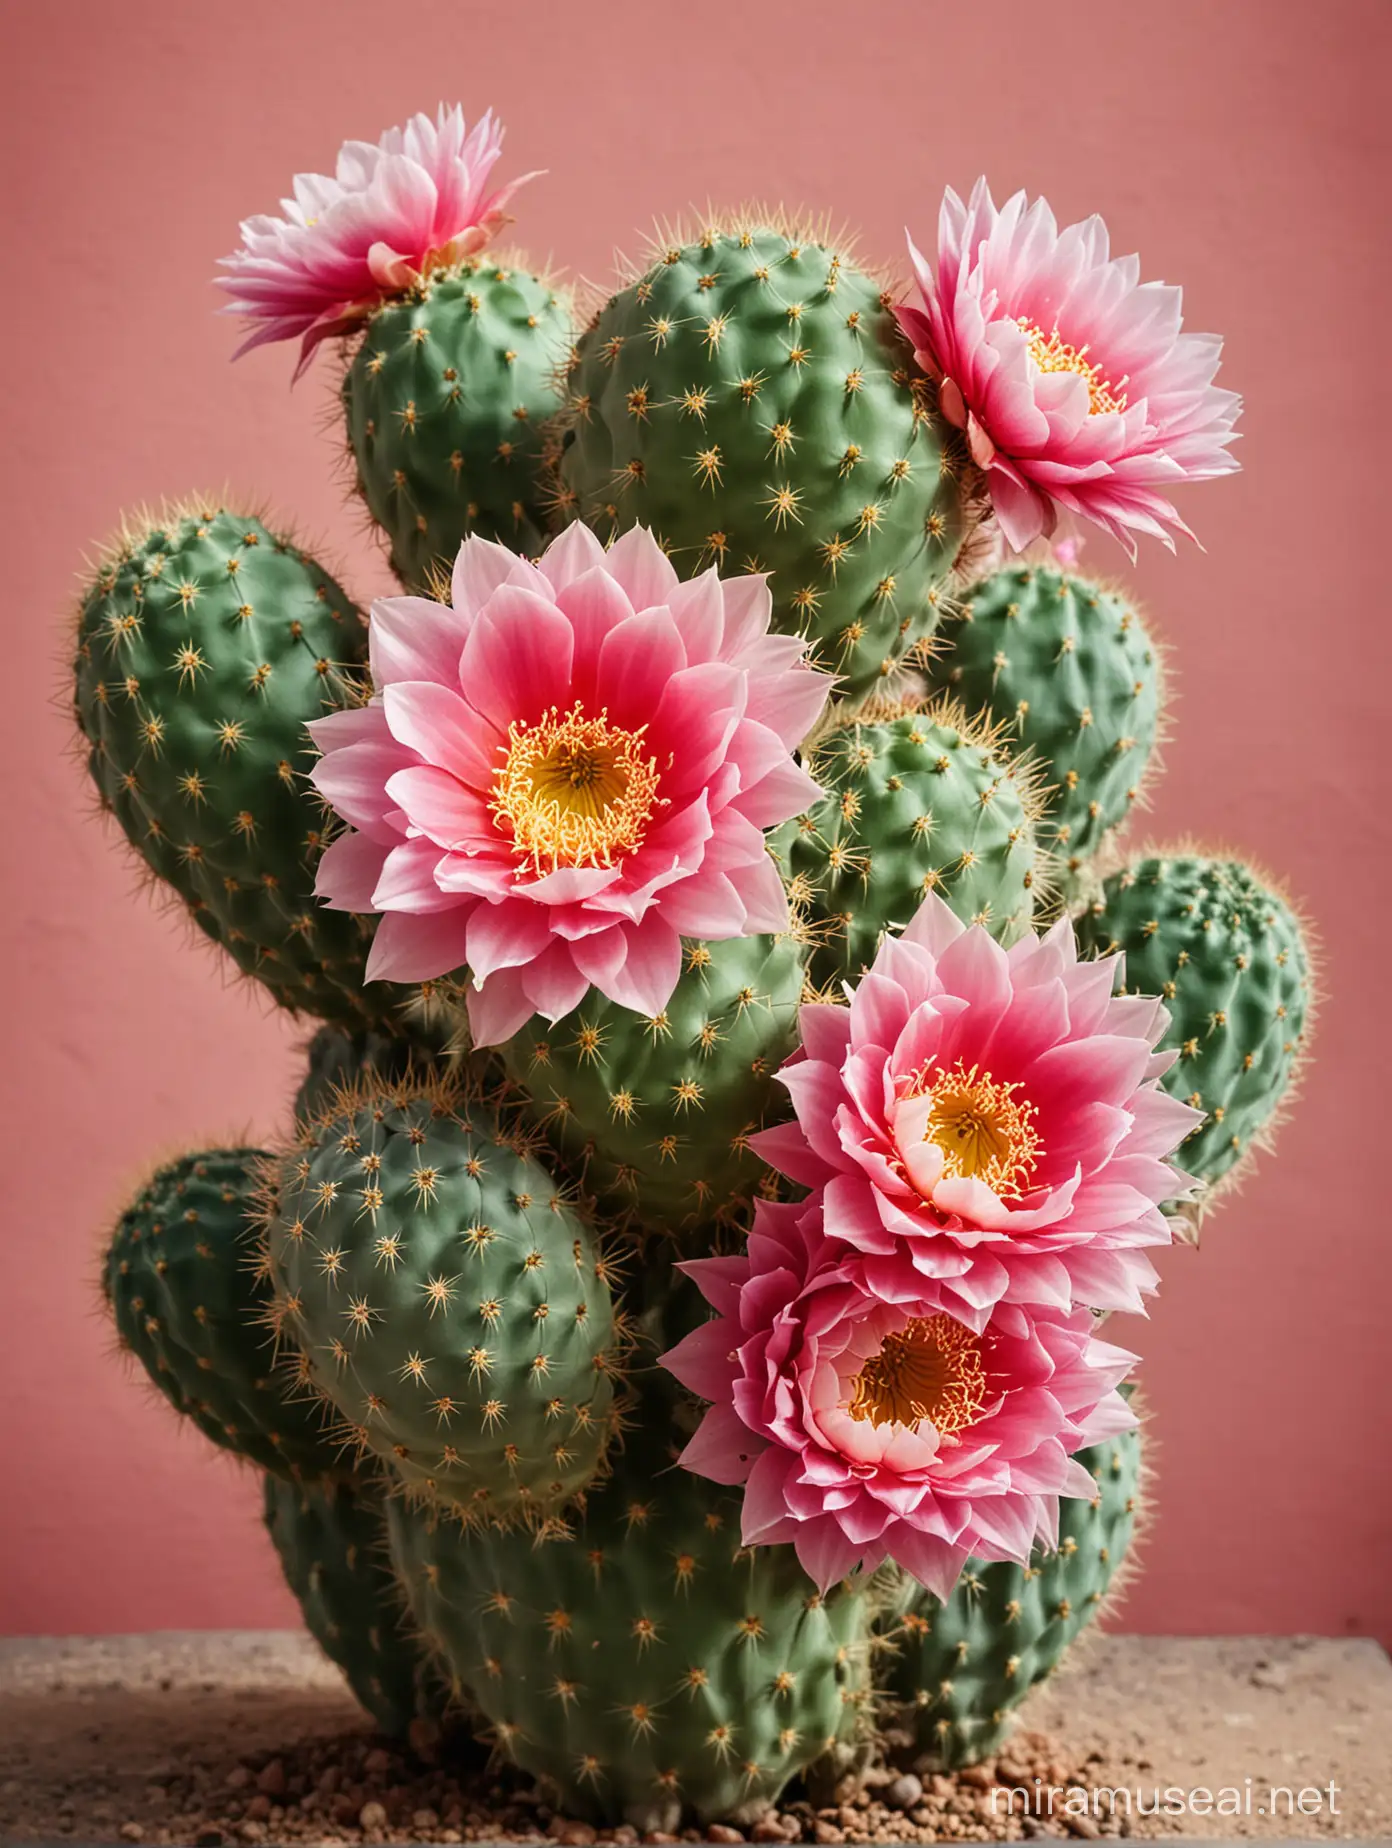 Blooming Cactus in Desert Sunrise